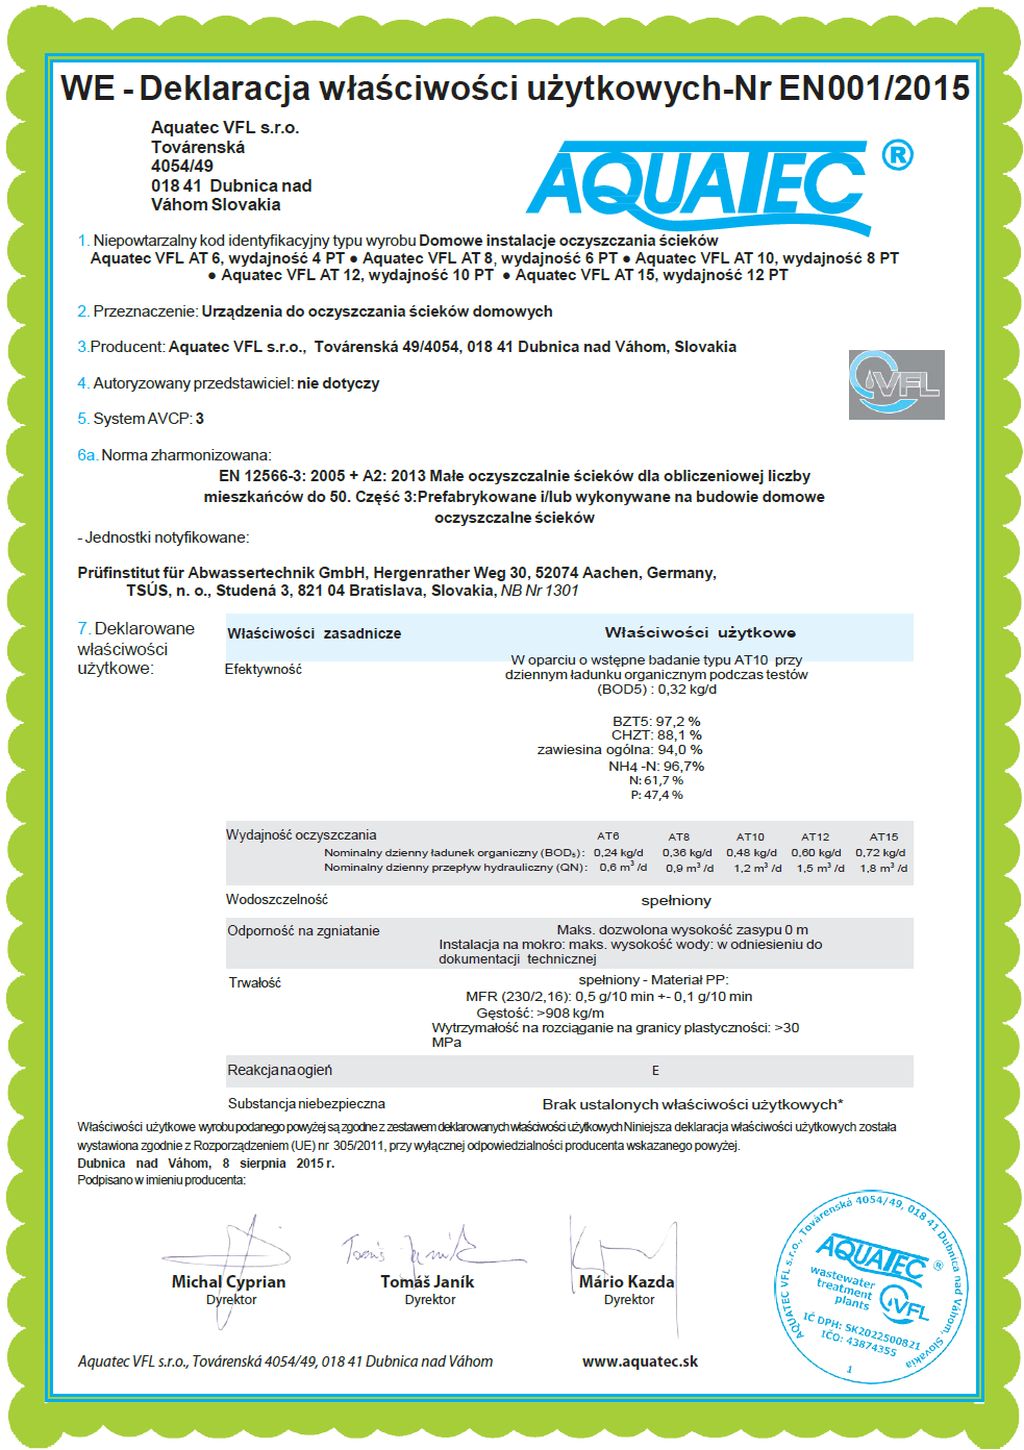 AT-Certyfikat-CE-2016-